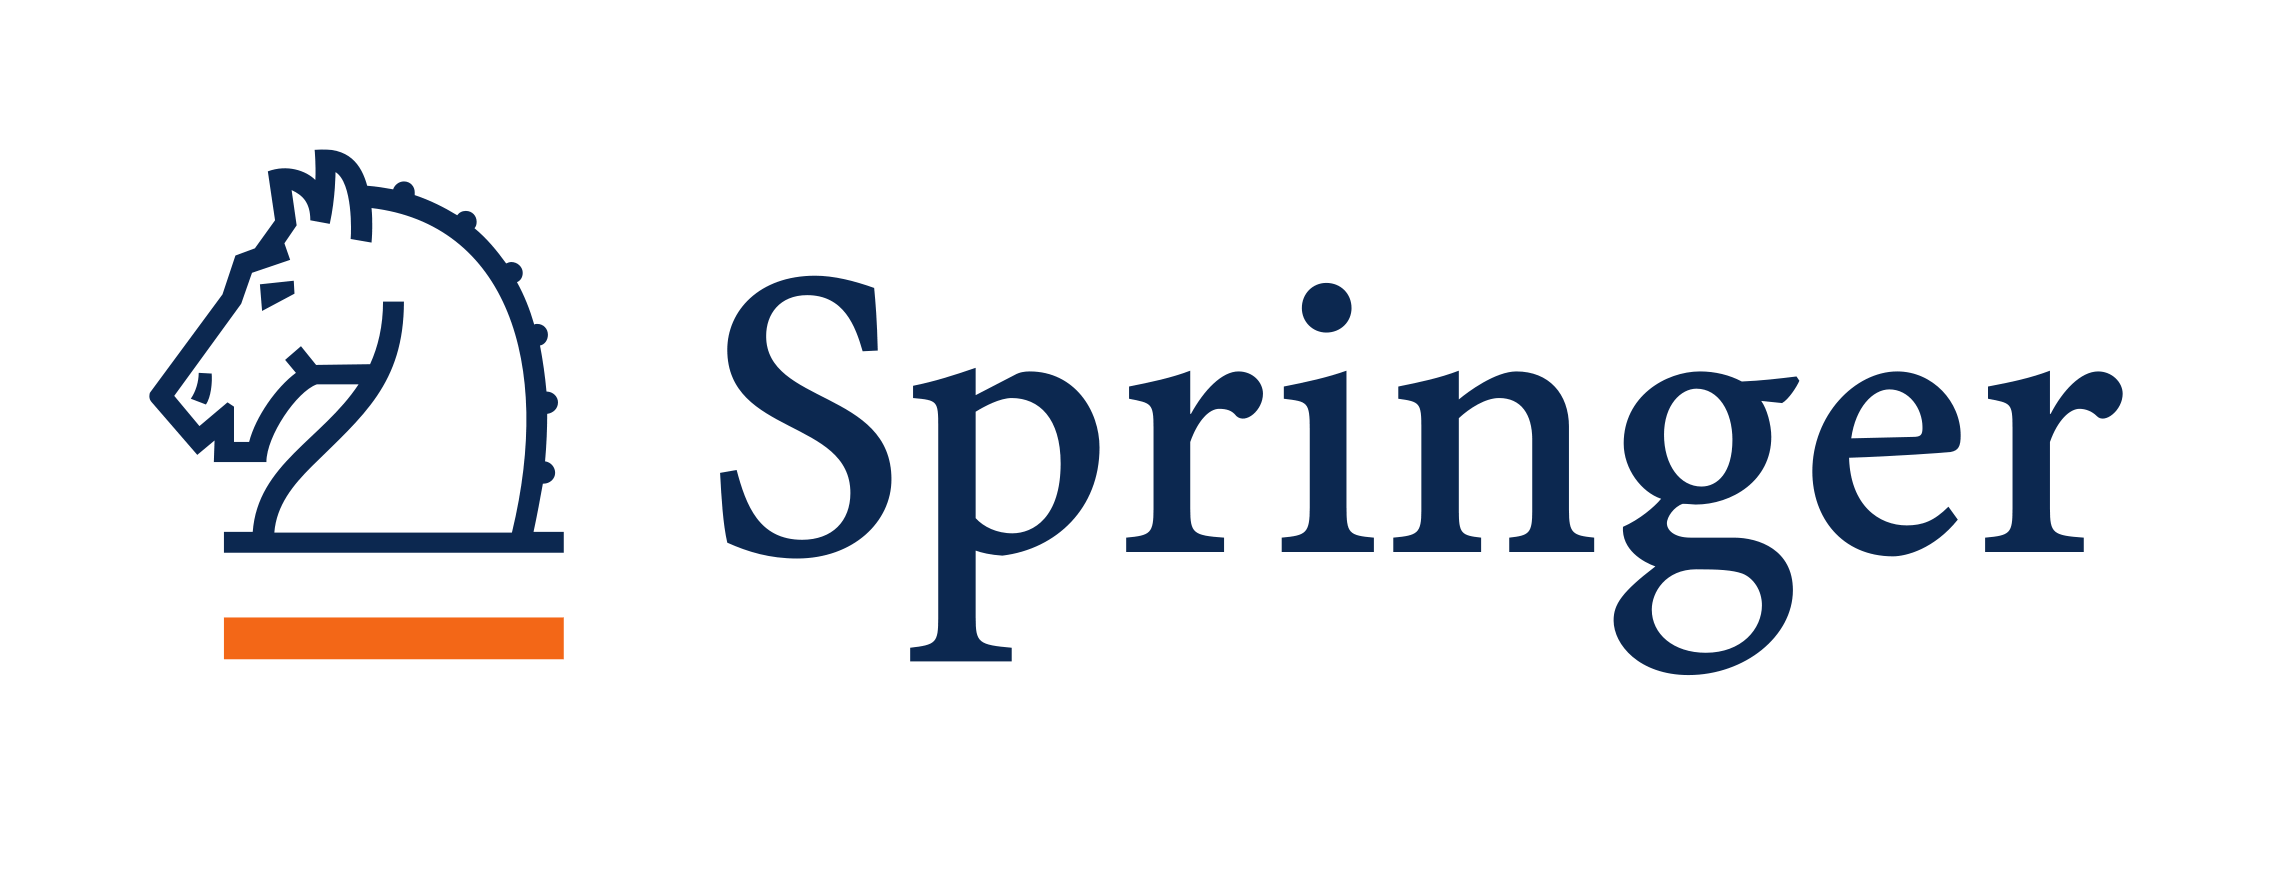 Springer — одна из крупнейших научных международных издательских компаний